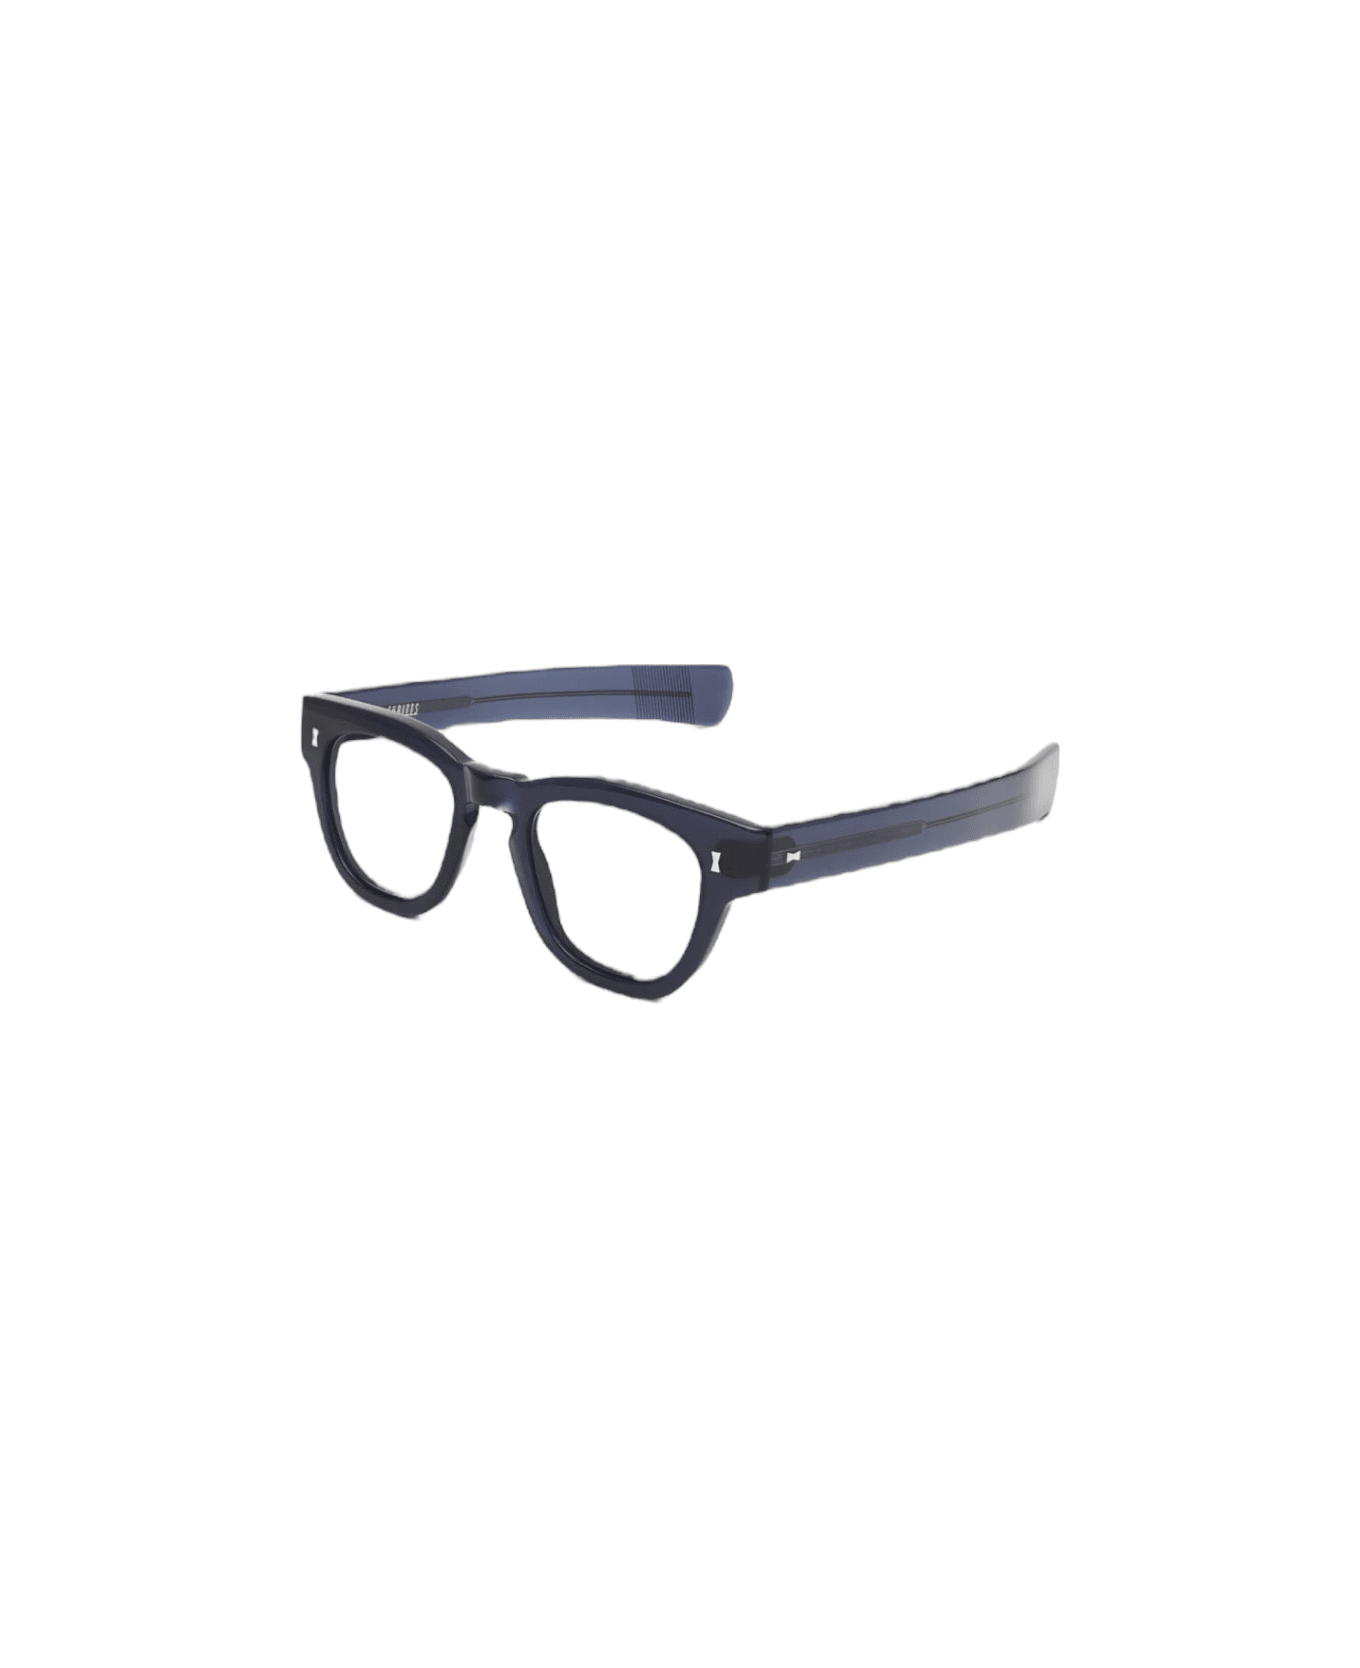 Cubitts Cruishank - Blue Glasses アイウェア